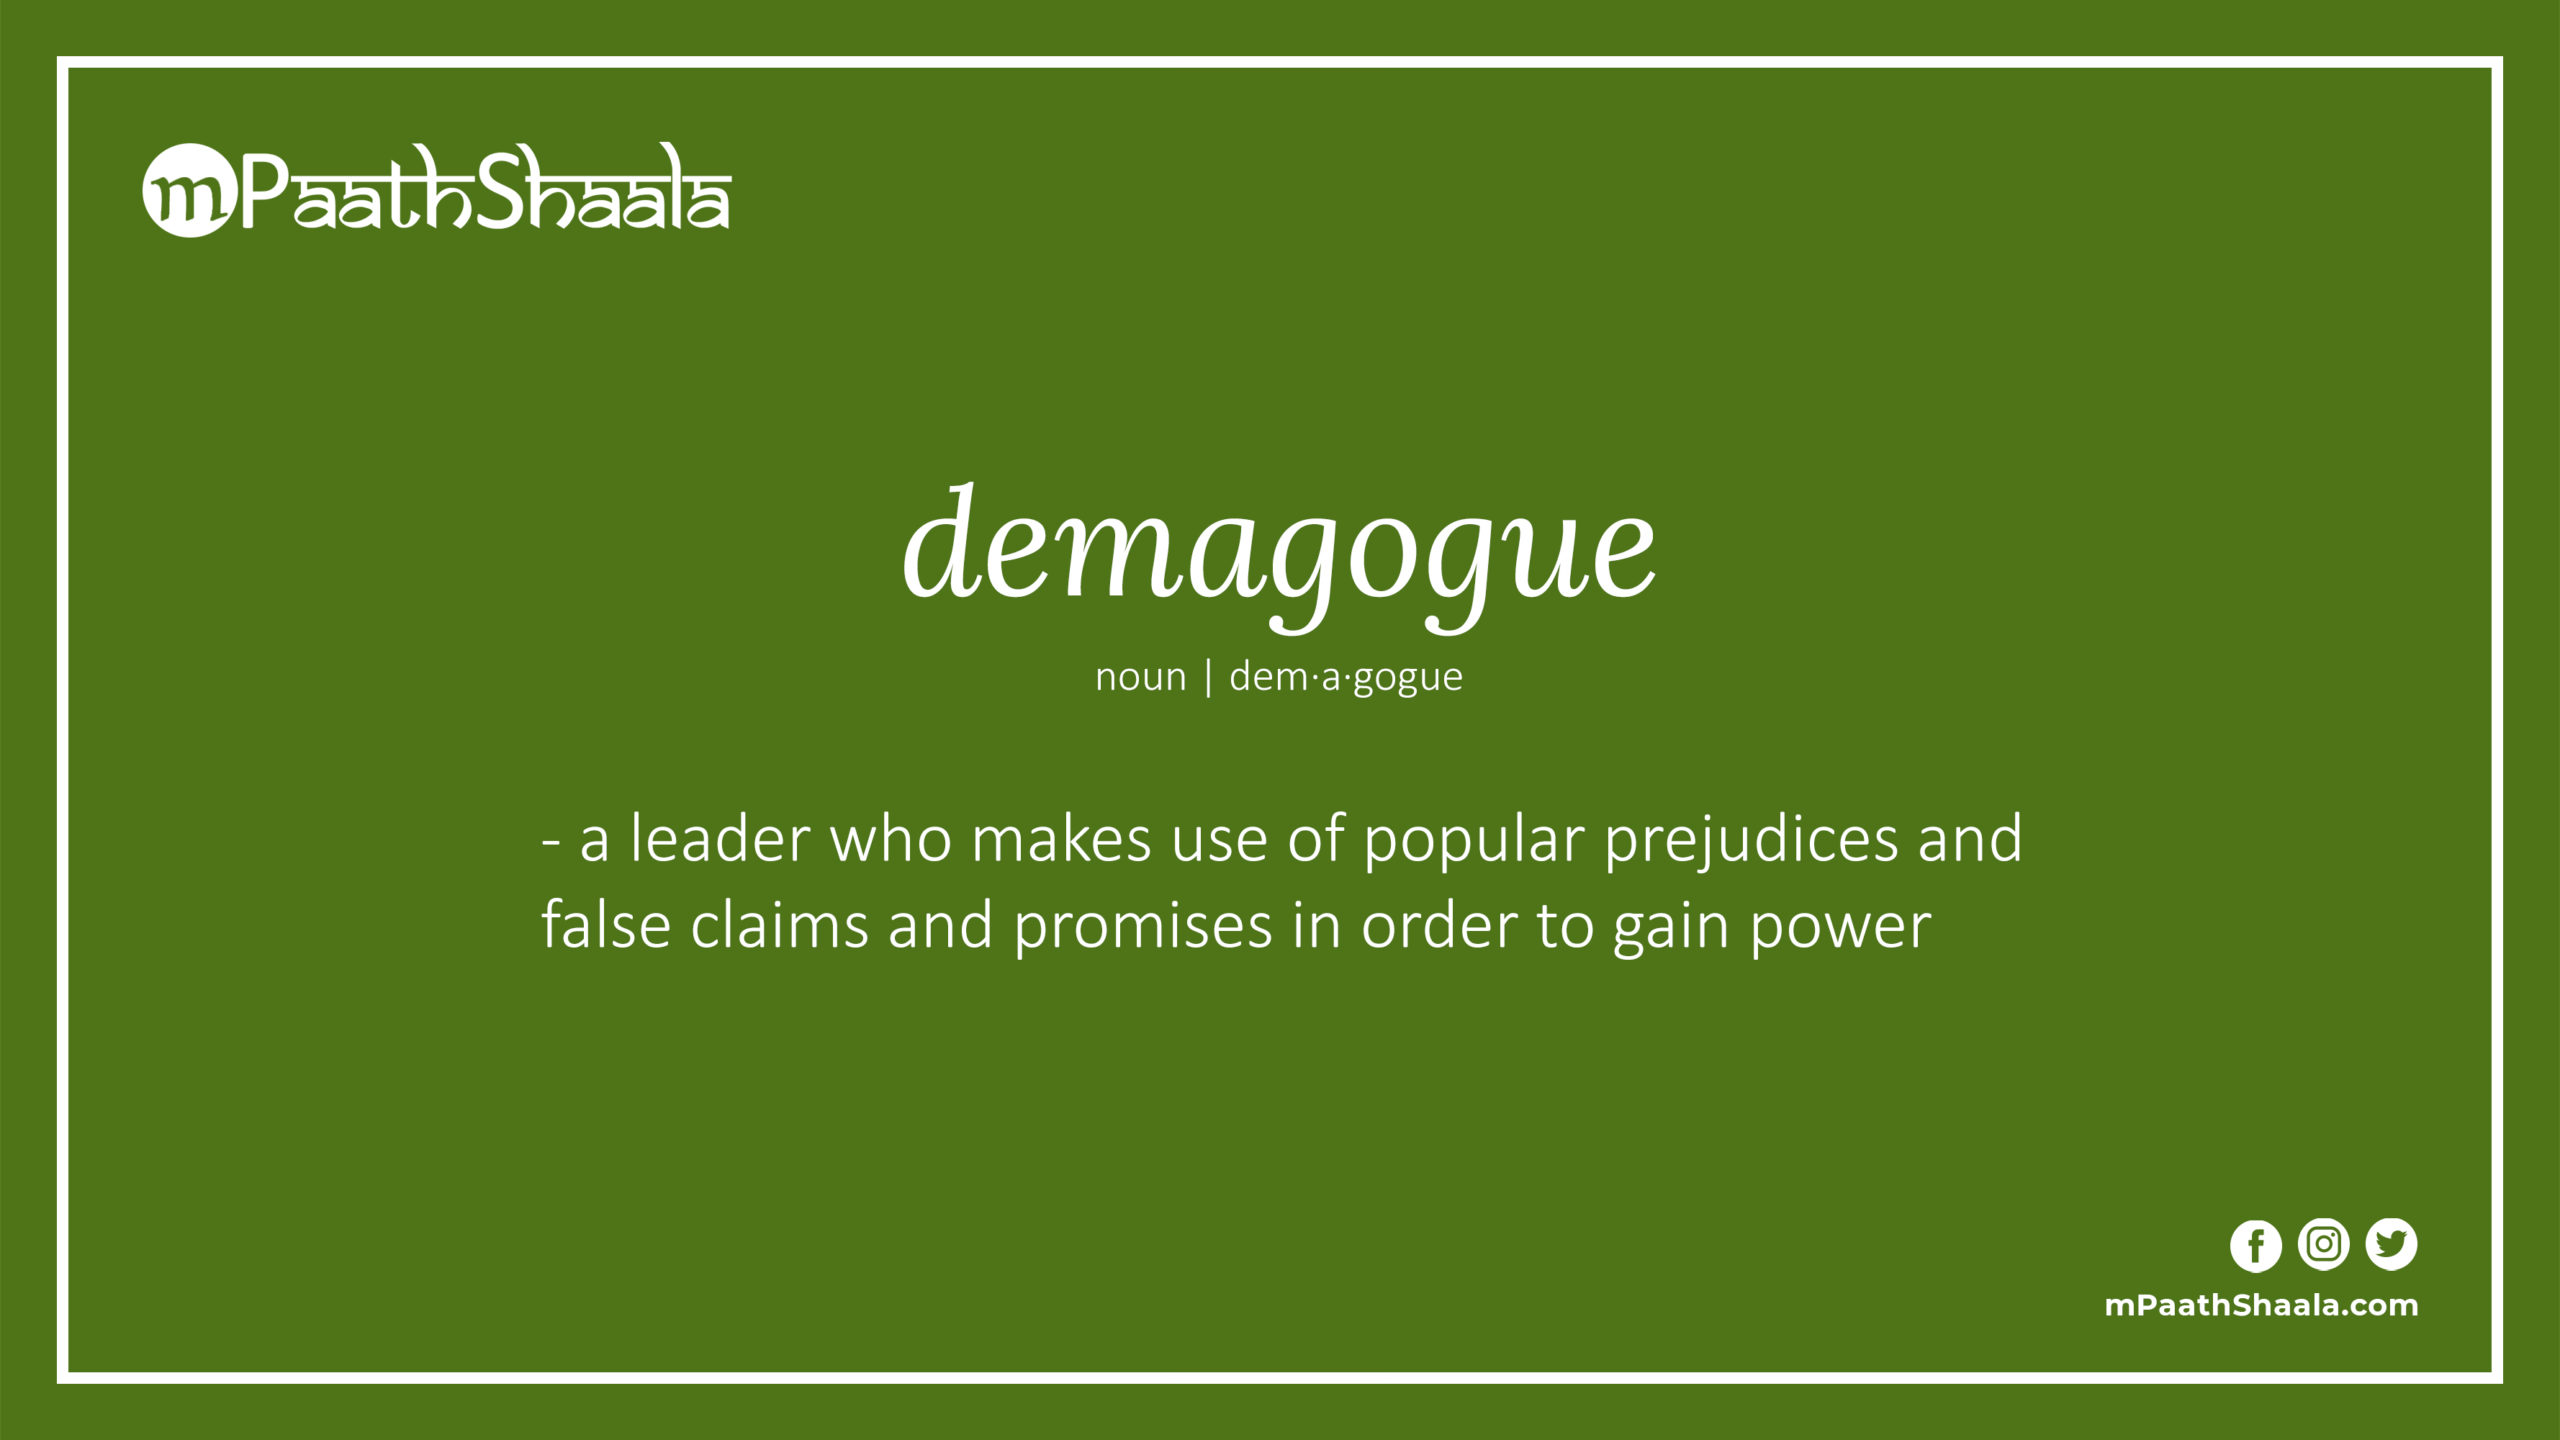 demagogue | Definition of demagogue - mPaathShaala